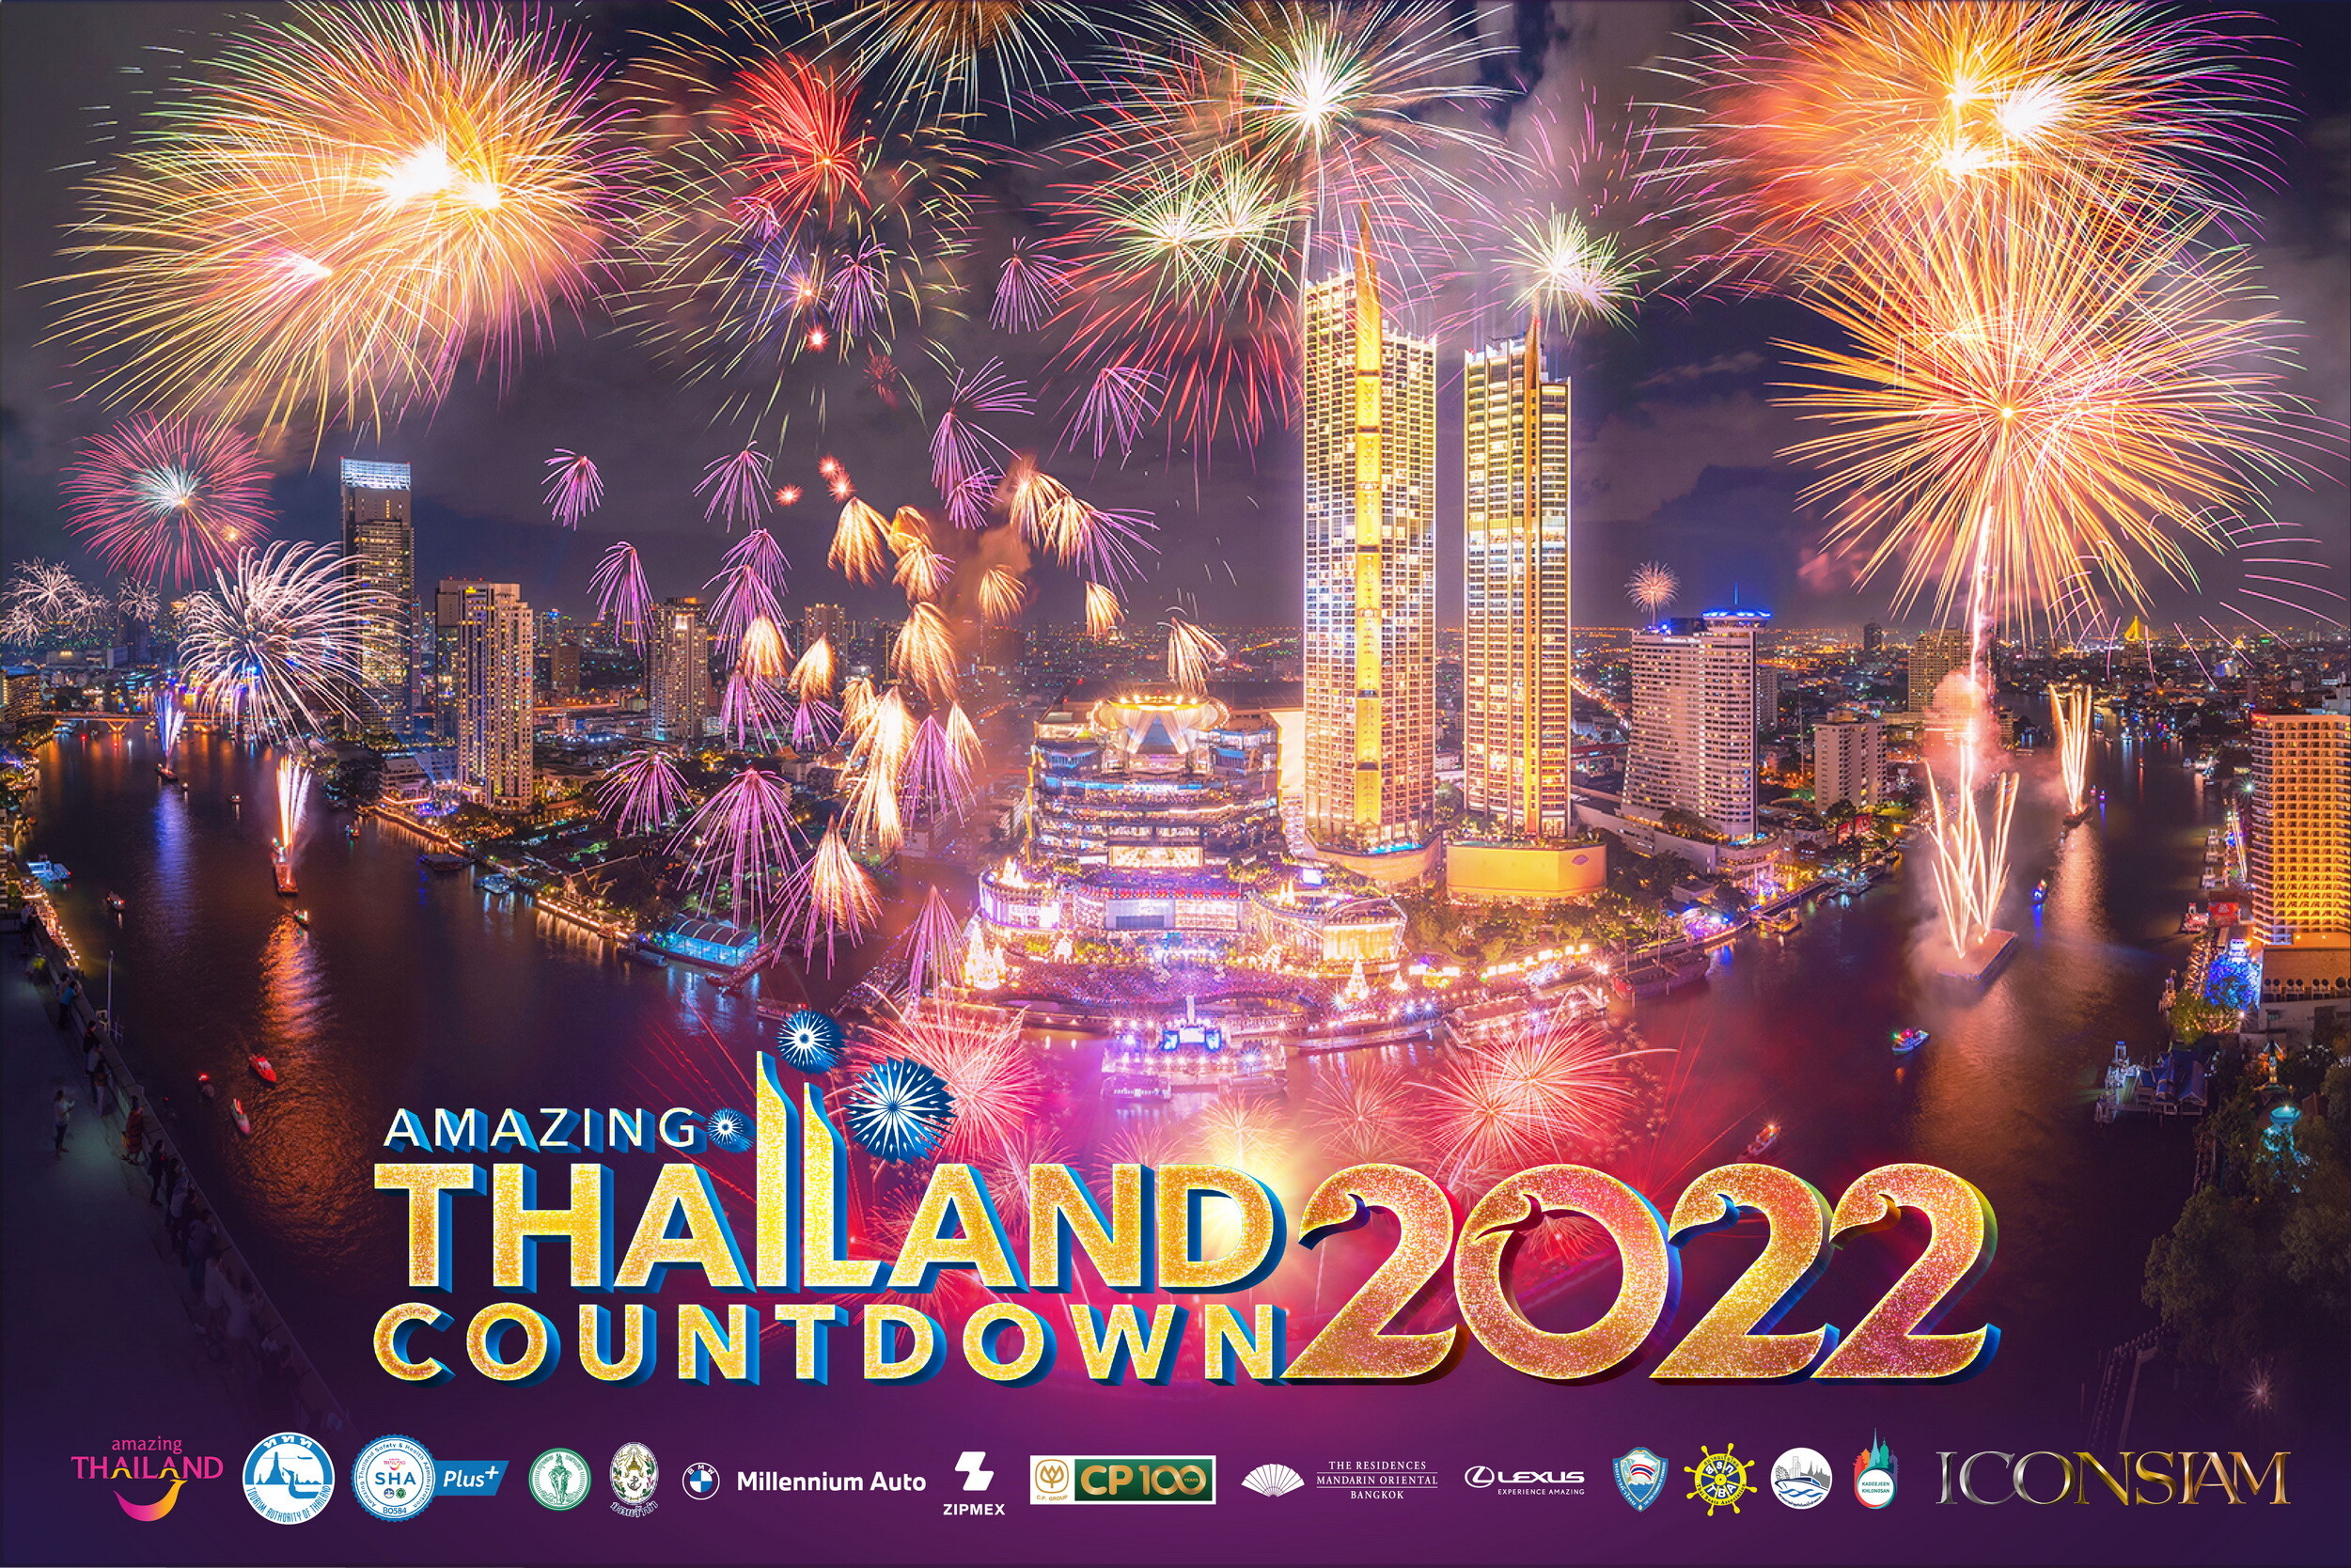 'ไอคอนสยาม' ผนึกกำลังภาครัฐและเอกชน จัดงานเคาท์ดาวน์ระดับโลก Amazing Thailand Countdown 2022 ยกระดับมาตรฐานความปลอดภัยขั้นสูงสุด